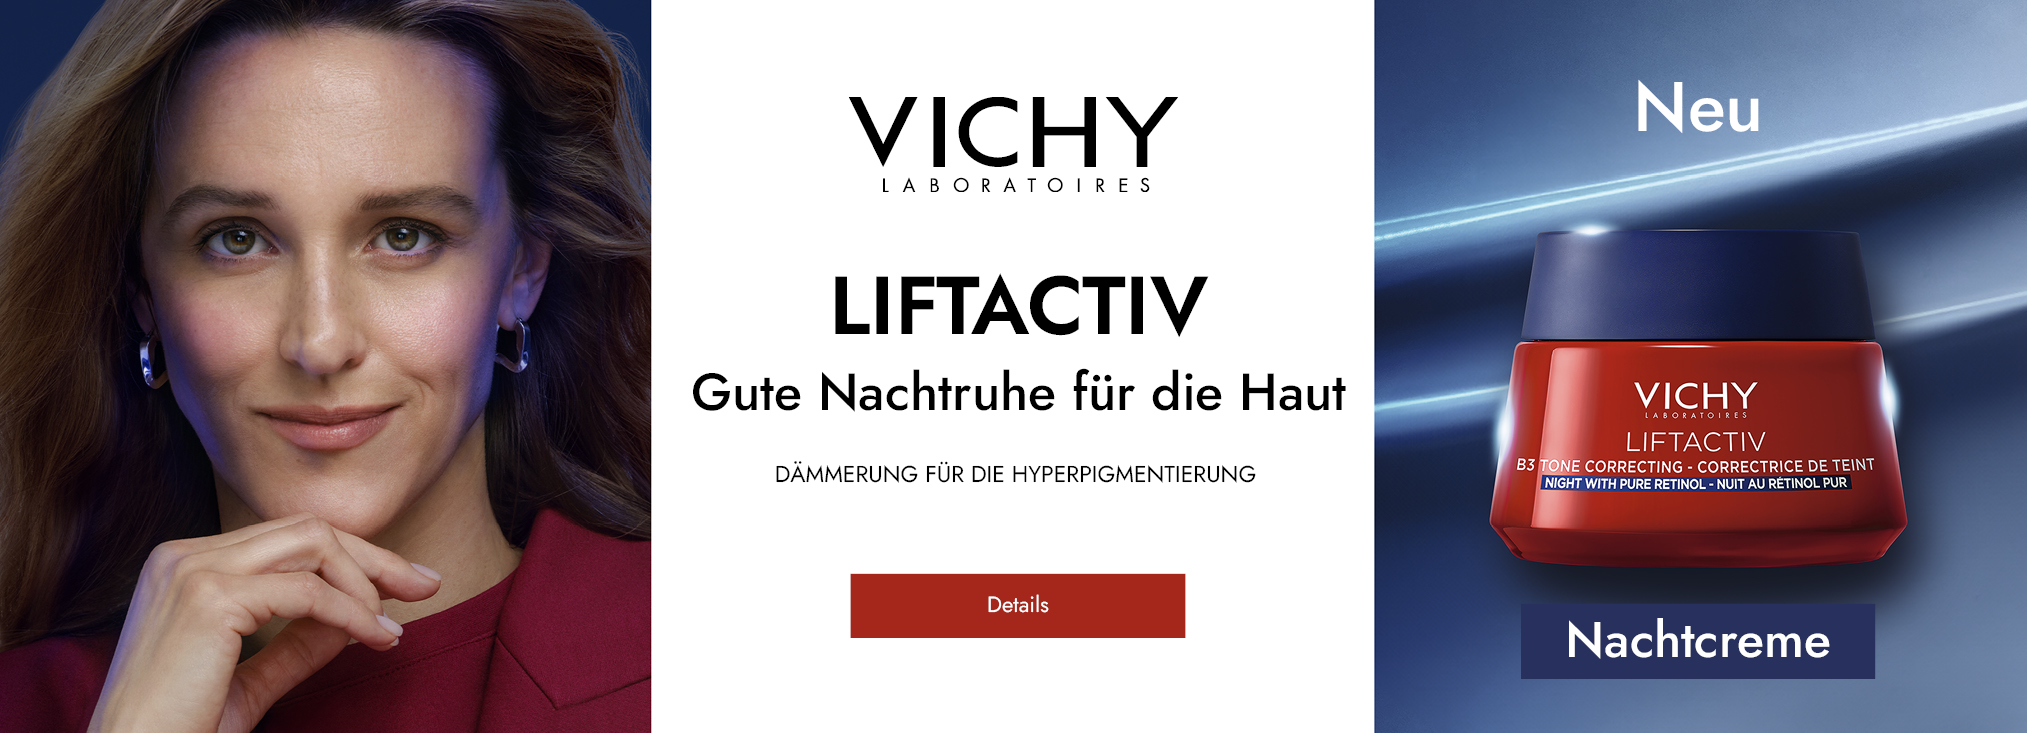 Vichy_dermocosmetics